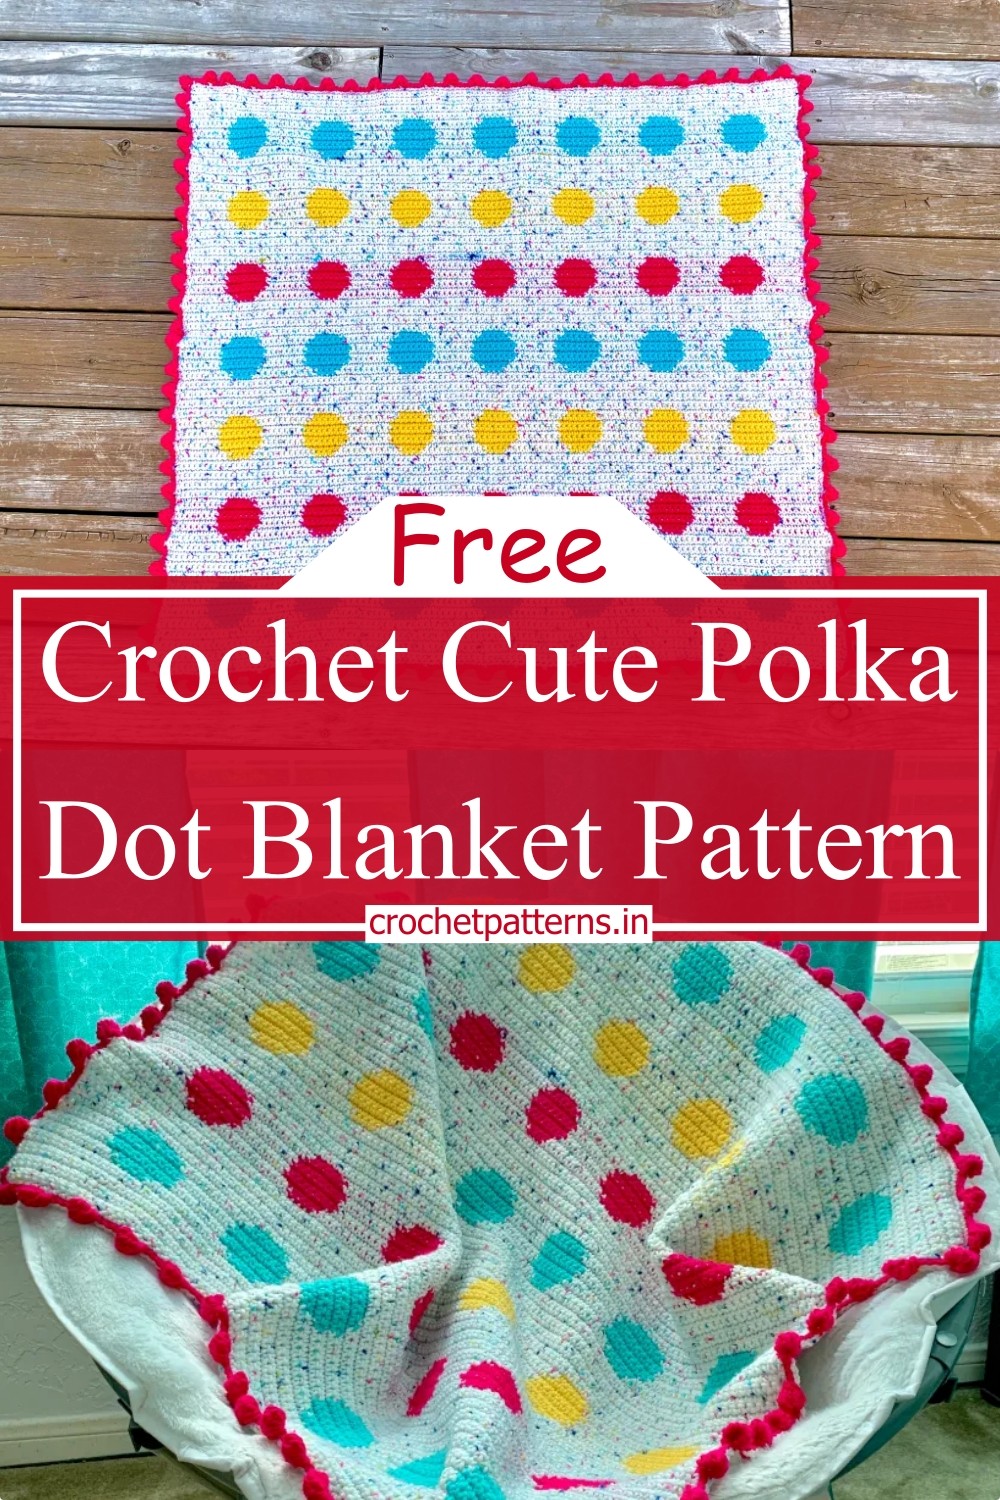 Crochet Cute Polka Dot Blanket Pattern